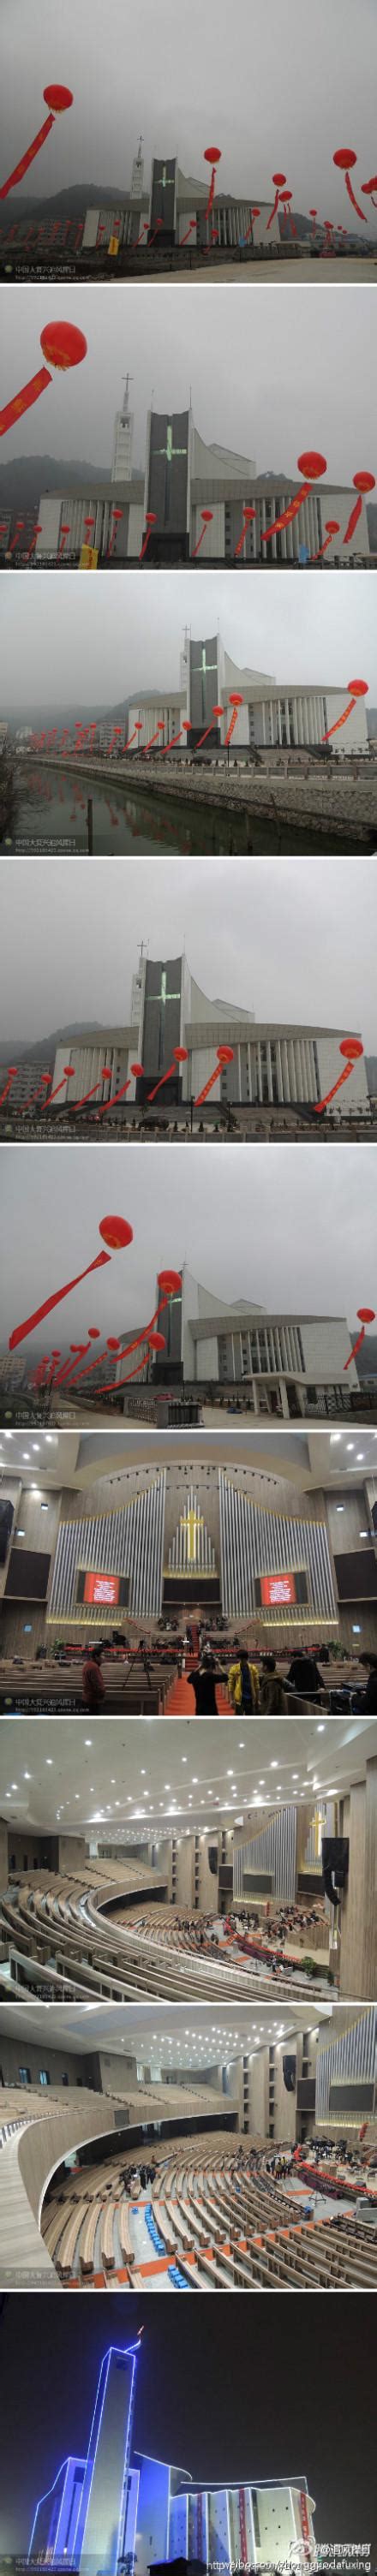 今日浙江温州柳市教堂落成 将成中国目前最大基督教堂-基督时报-基督教资讯平台